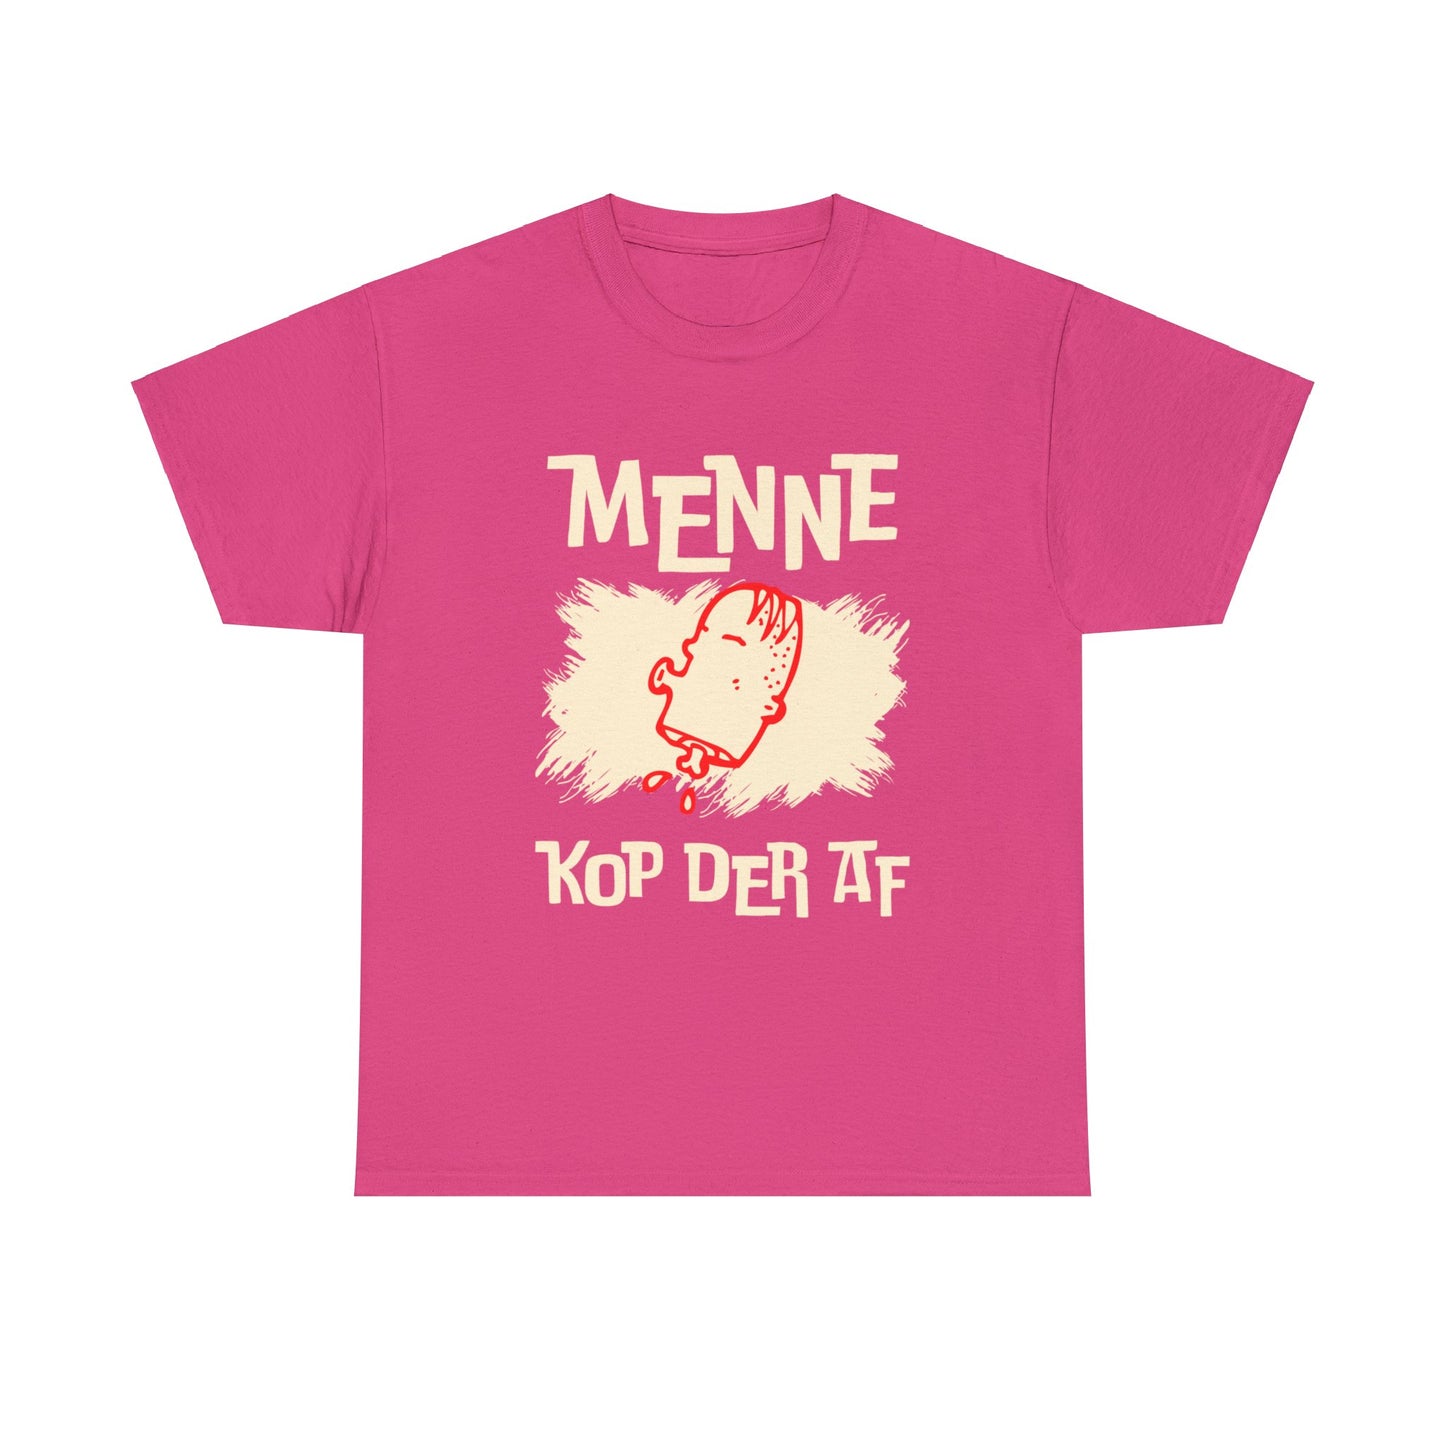 Int Oilsjters - Tshirt - Menne Kop Der Af